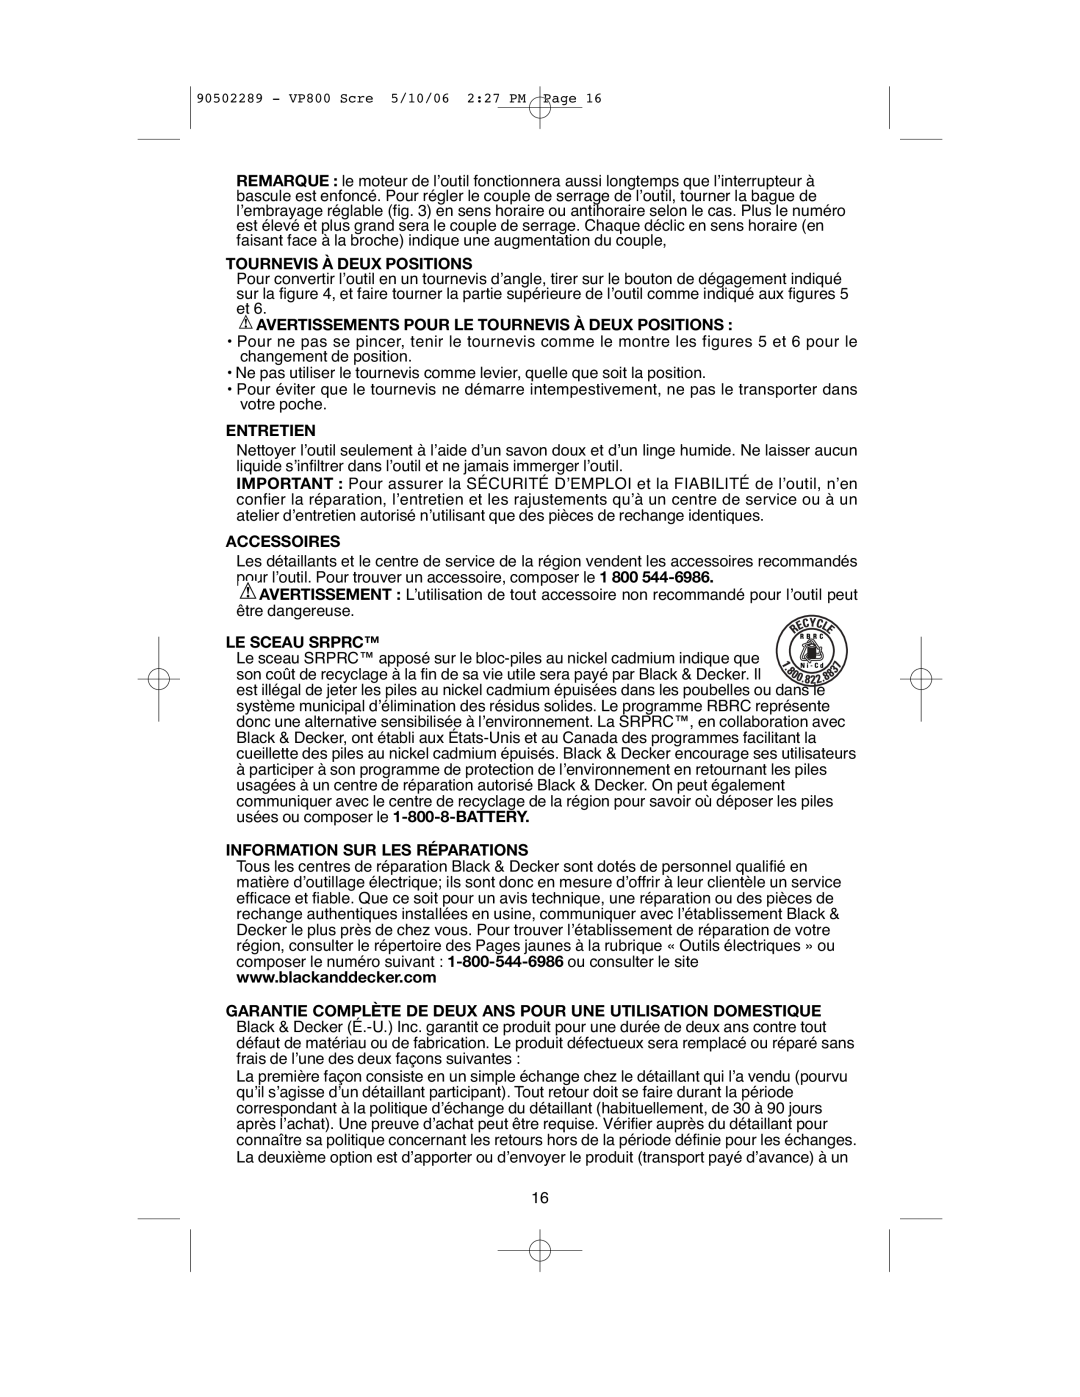 Black & Decker VP800 Avertissements Pour Le Tournevis À Deux Positions, Entretien, Accessoires, Le Sceau Srprc 